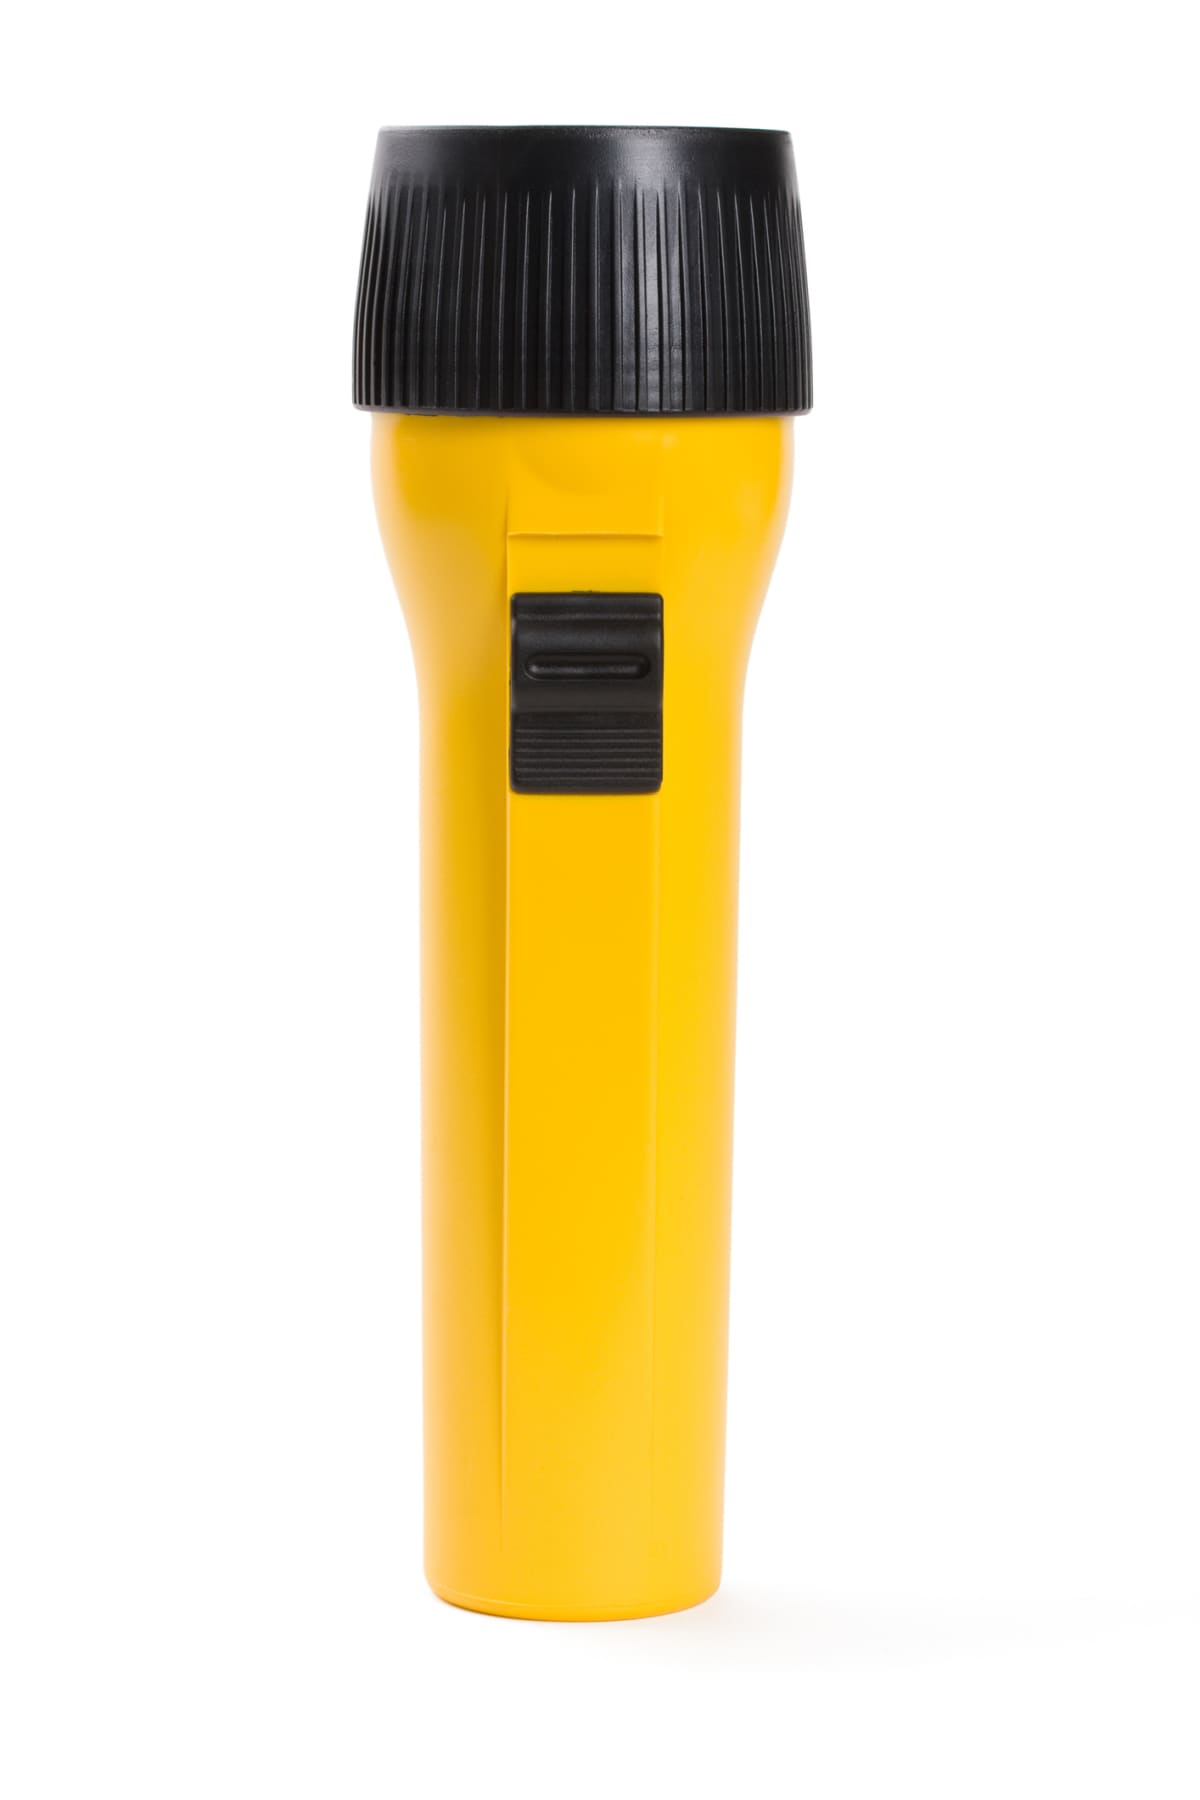 Yellow flashlight isolated on white.